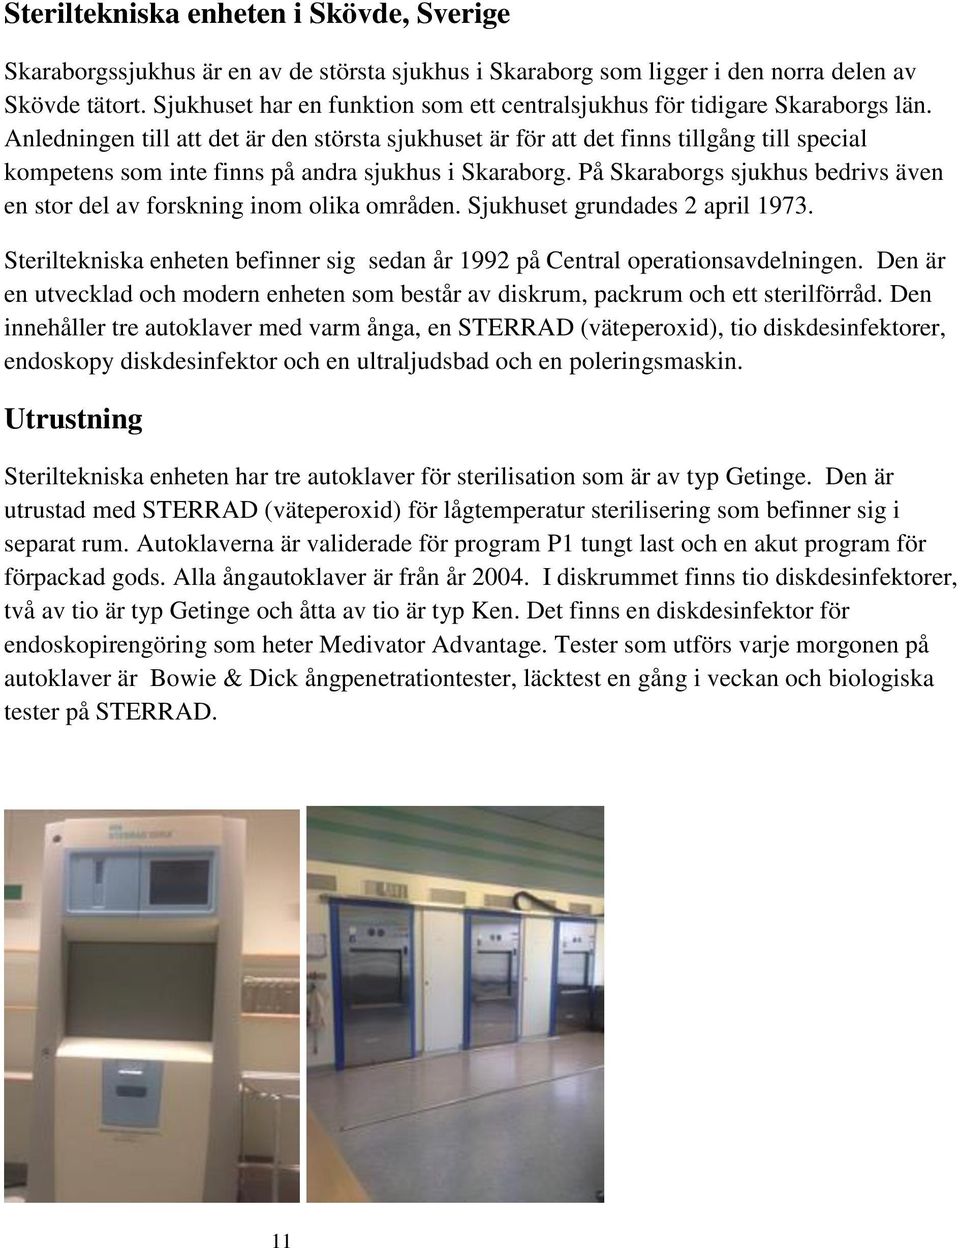 Anledningen till att det är den största sjukhuset är för att det finns tillgång till special kompetens som inte finns på andra sjukhus i Skaraborg.